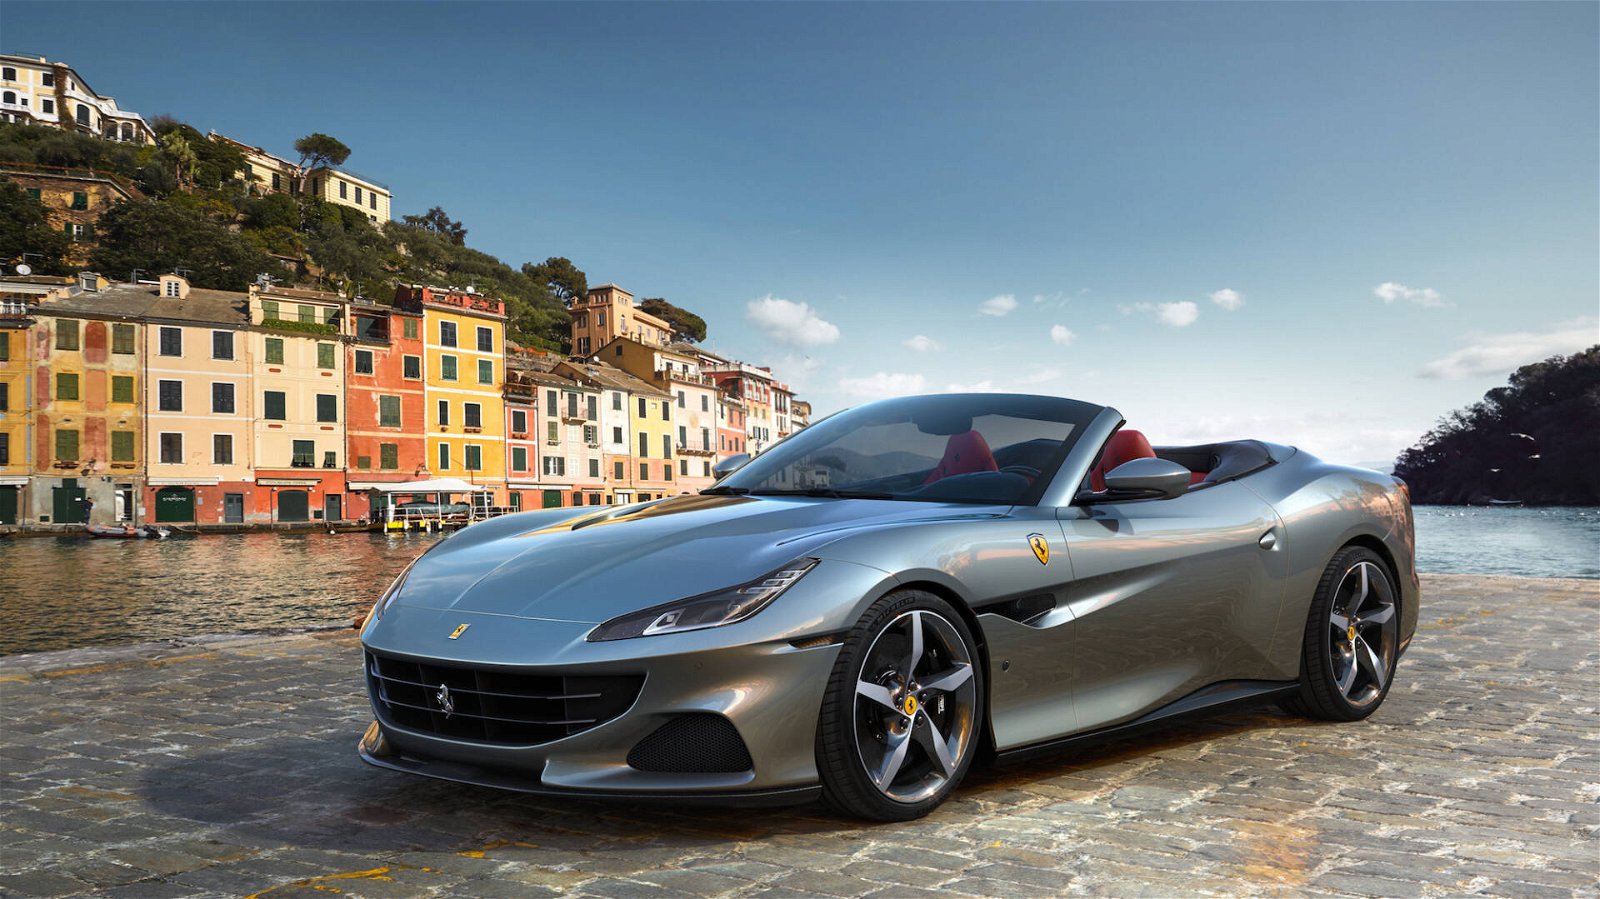 Immagine di Ferrari stampa soldi: consegne migliori dell’epoca pre-covid